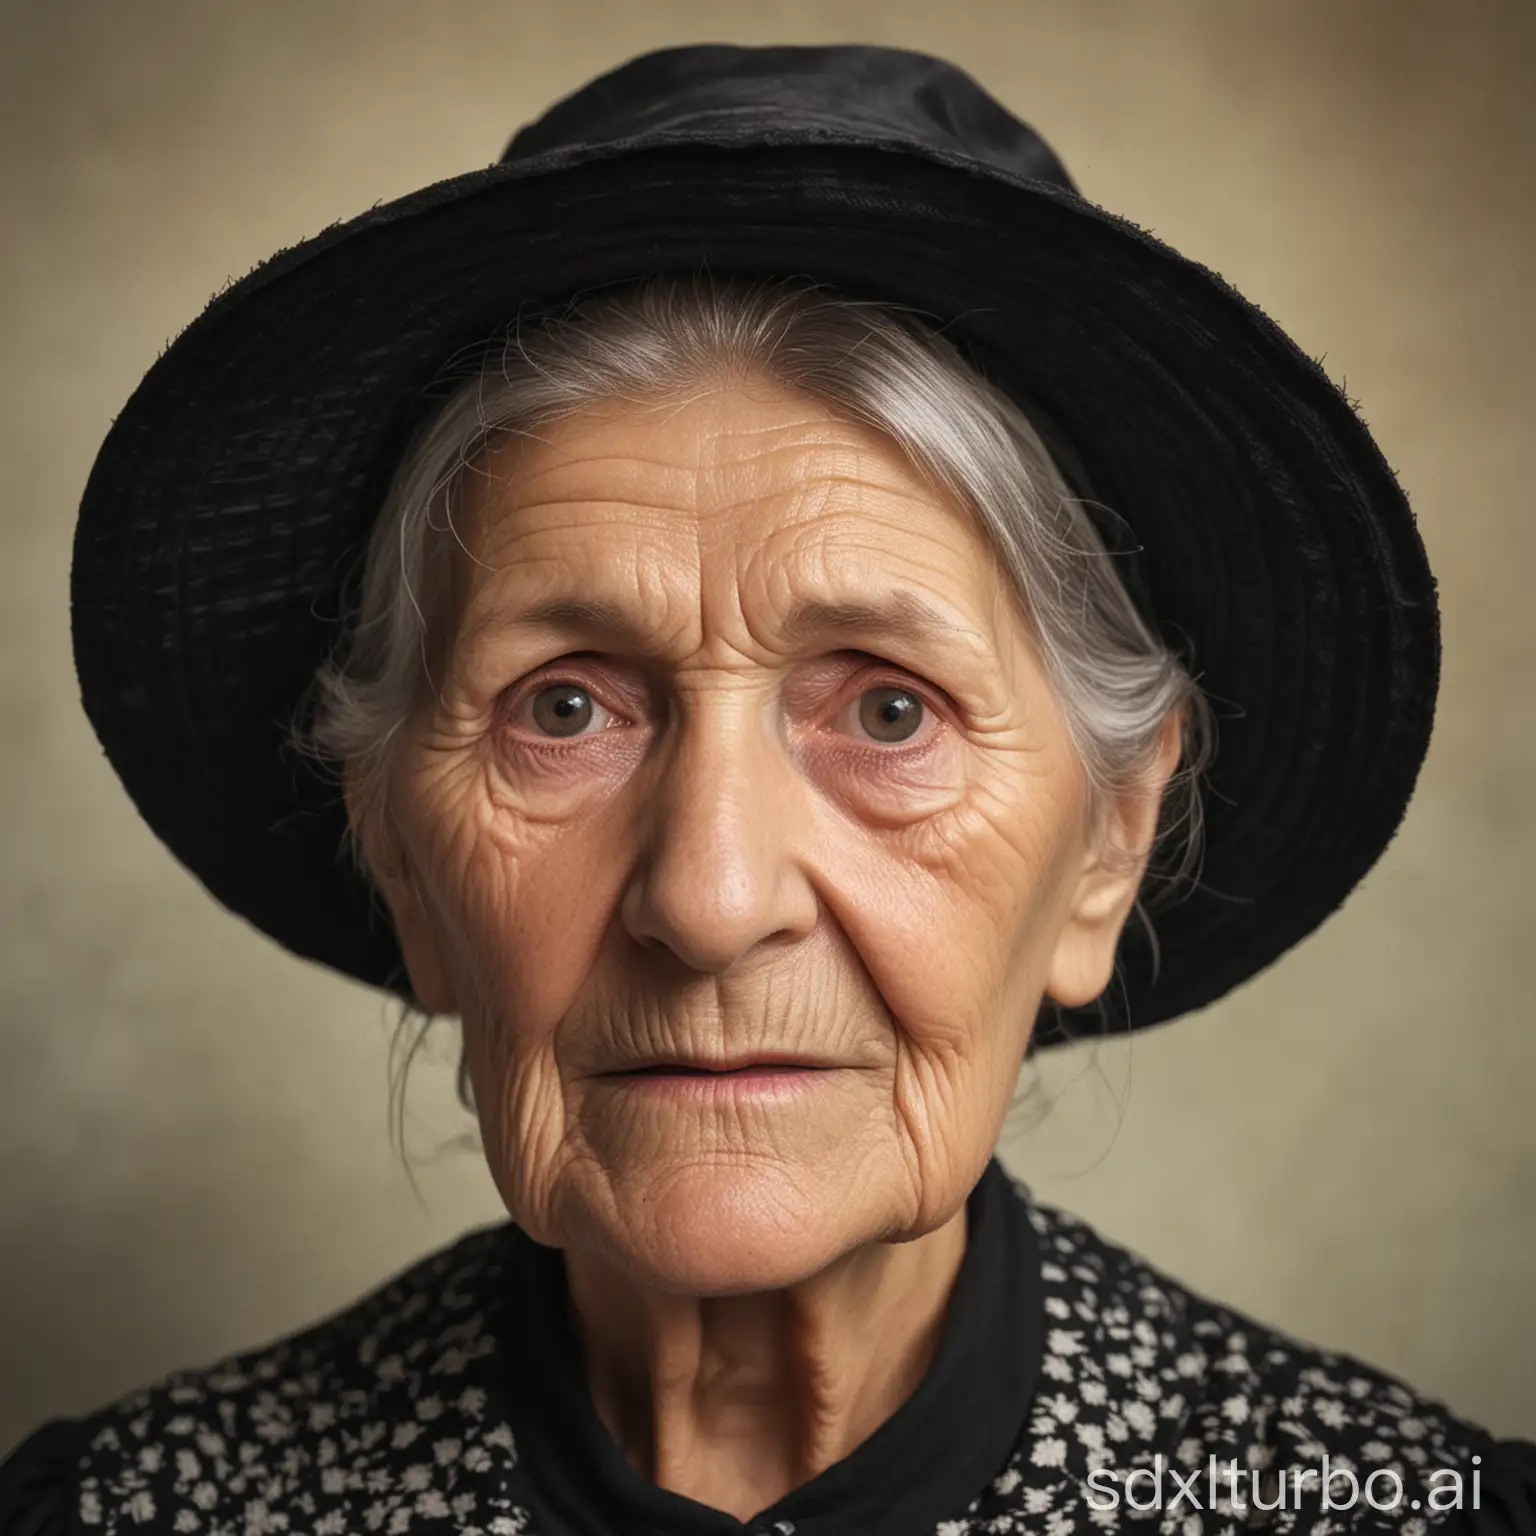 Elderly-Woman-in-Traditional-Black-Bonnet-Hat-Portrait